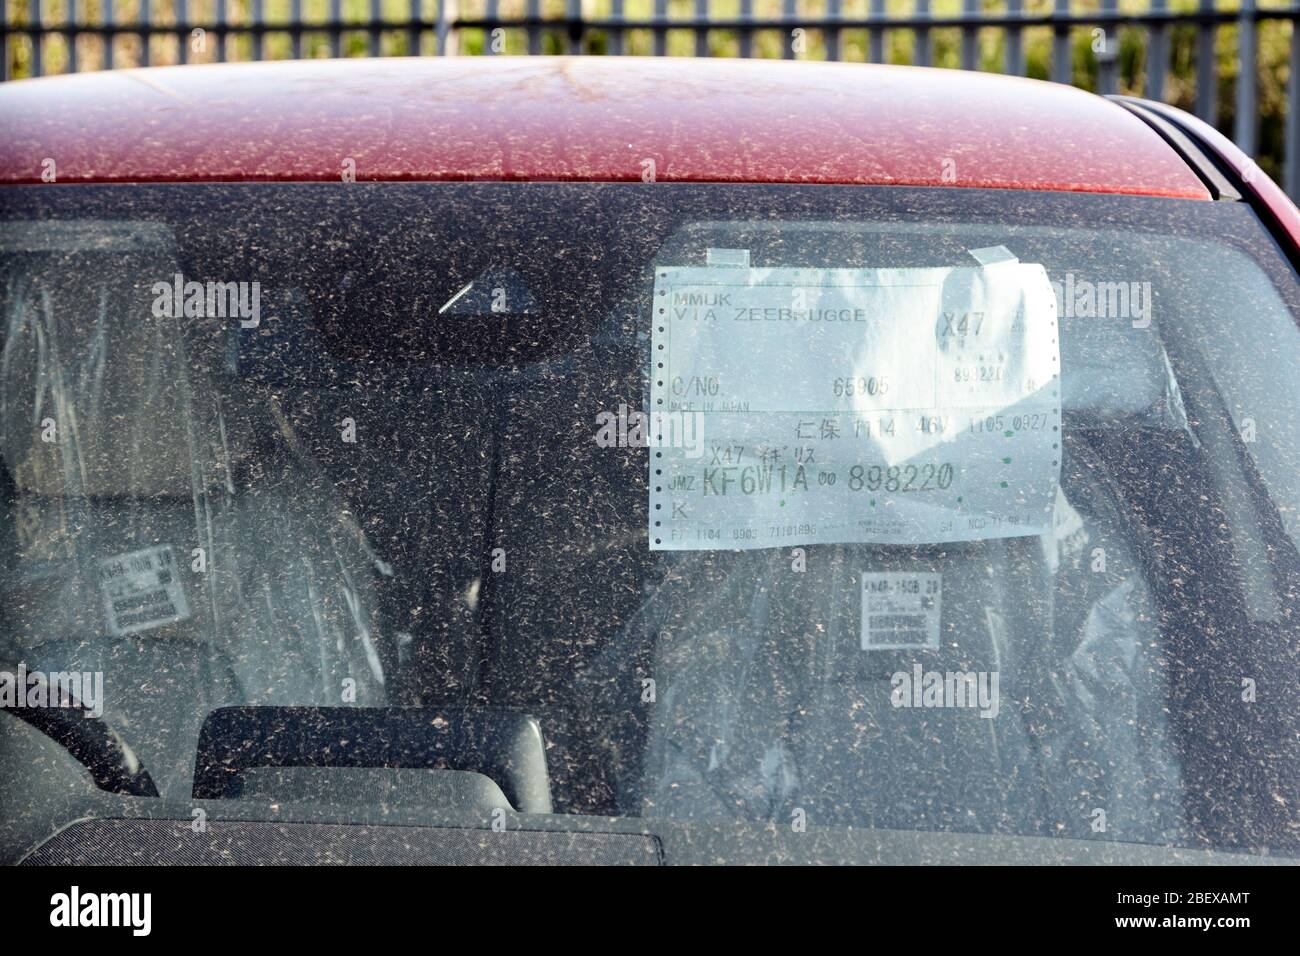 Fensteraufkleber des nagelneuen japanischen Autos, das durch geschlossene Autohäuser wegen der Coronavirus-Sperre von Newtownabbey Nordirland mit Staub bedeckt ist Stockfoto